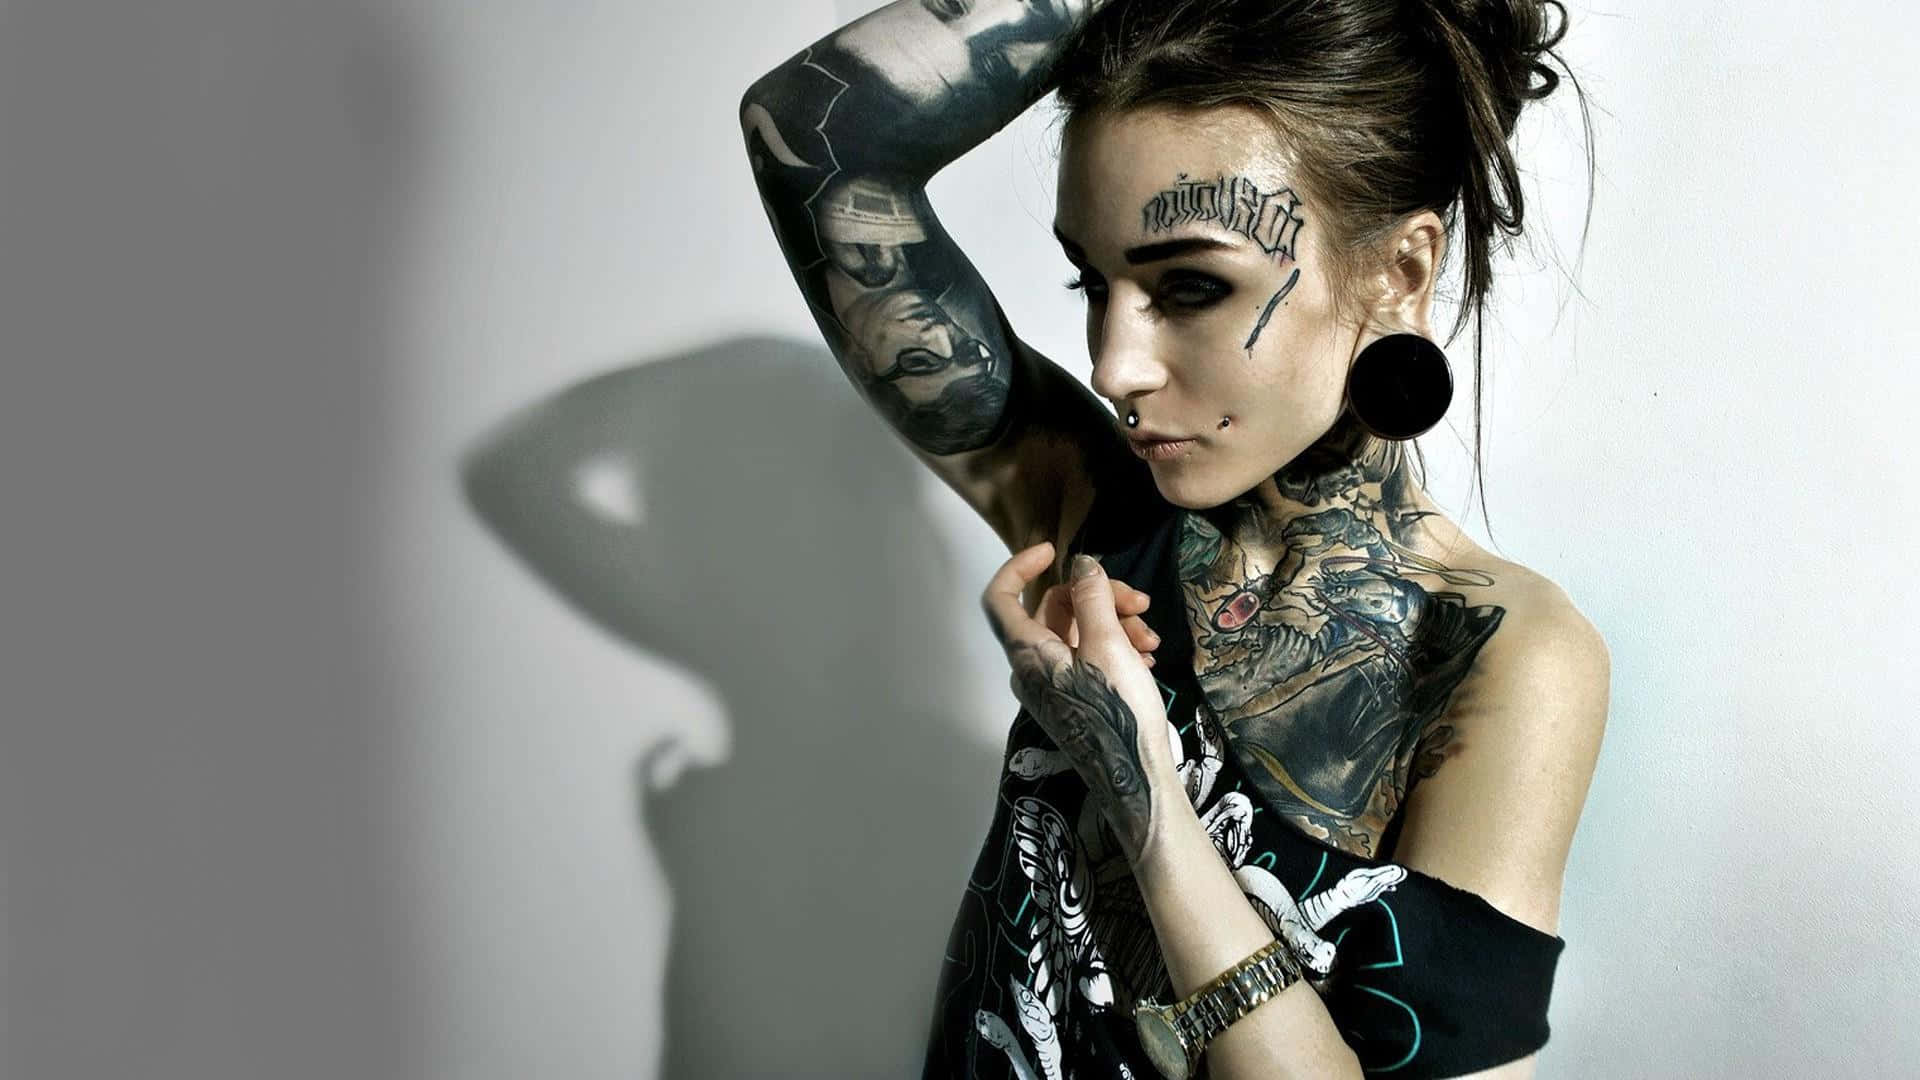 Enkvinna Med Tatueringar På Armen Poserar